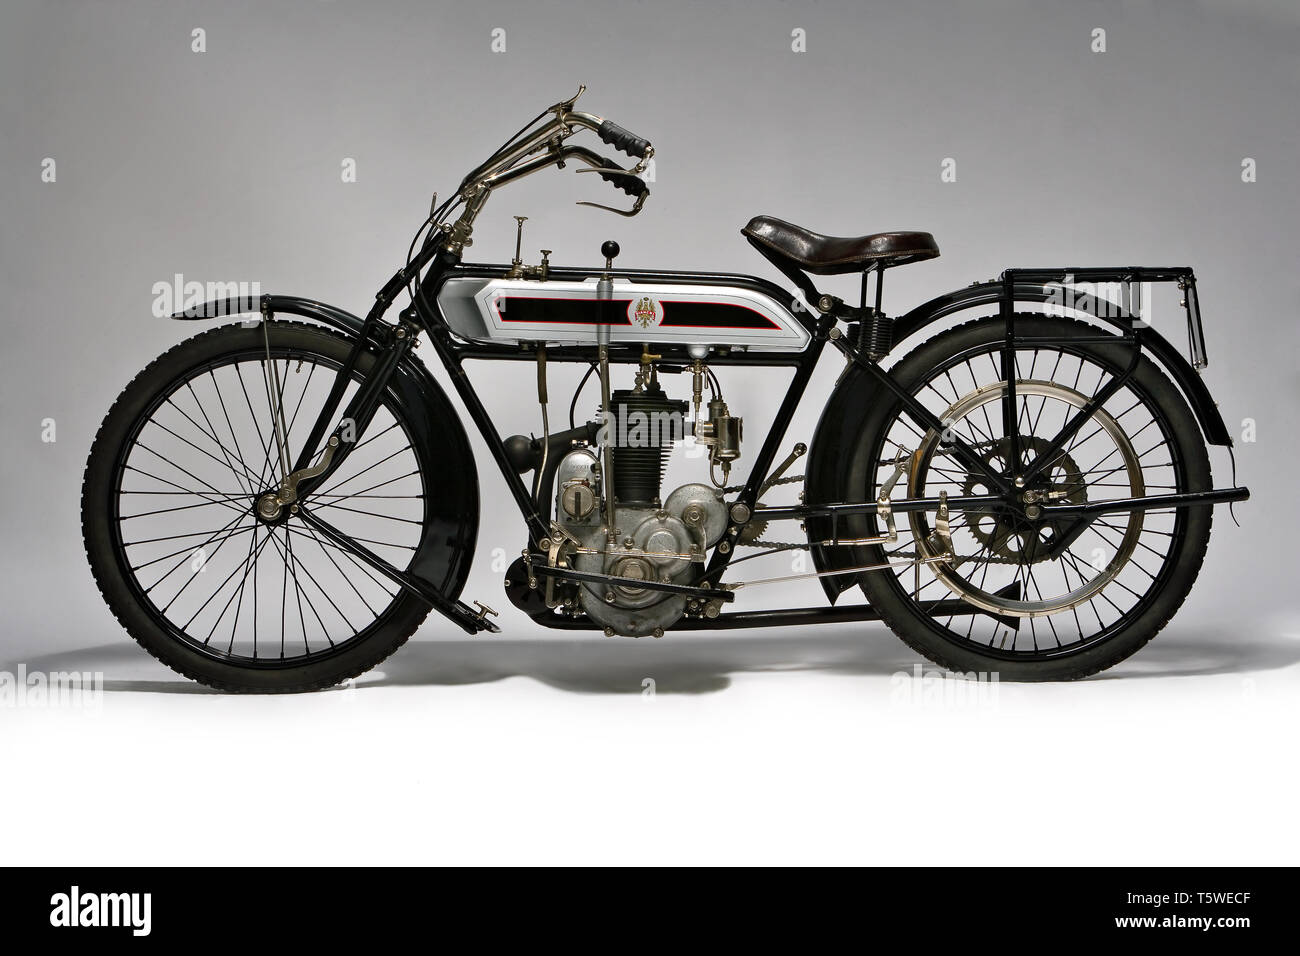 Moto d'epoca Bianchi C 75 A fabbrica : Bianchi modello : C 75 dans une fabbricata : Italia Milano - anno : 1914 conditions : restaurata cilin Banque D'Images